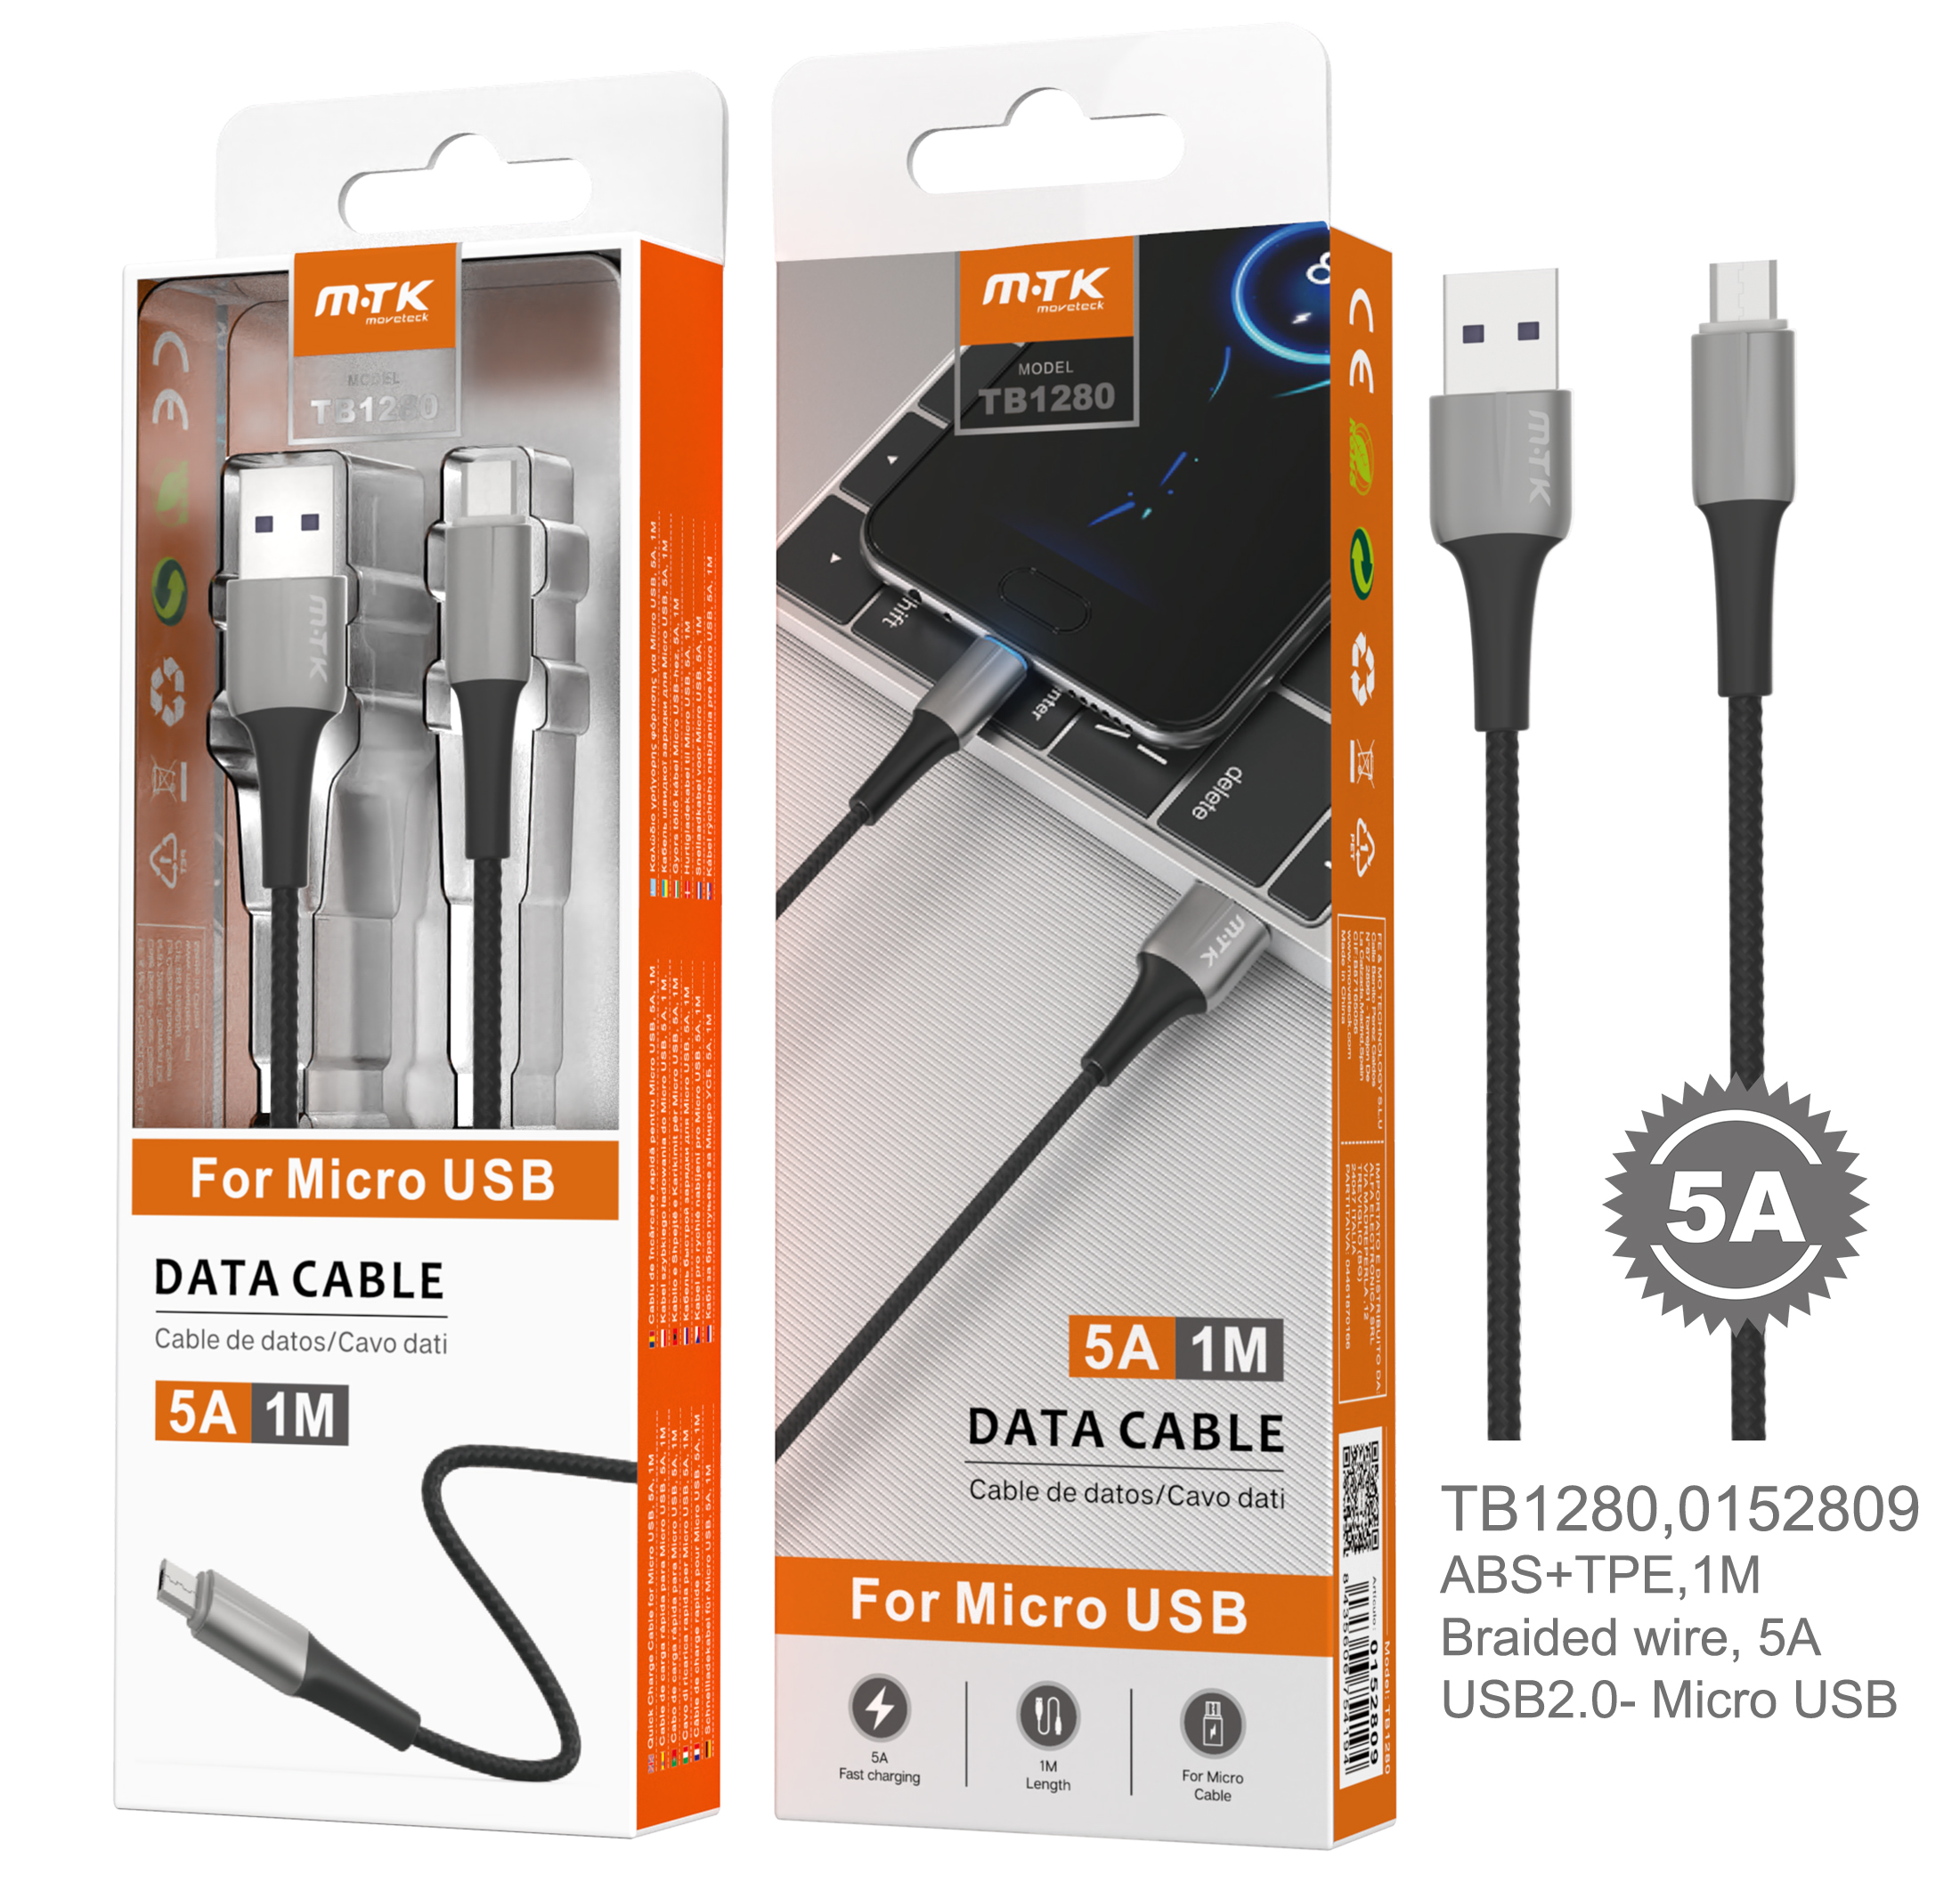 TB1280 GR Cable de Datos Metal Sword para Micro USB, Cable Nylon trenzado con Luz LED Azul, 1M, 5A, Gris